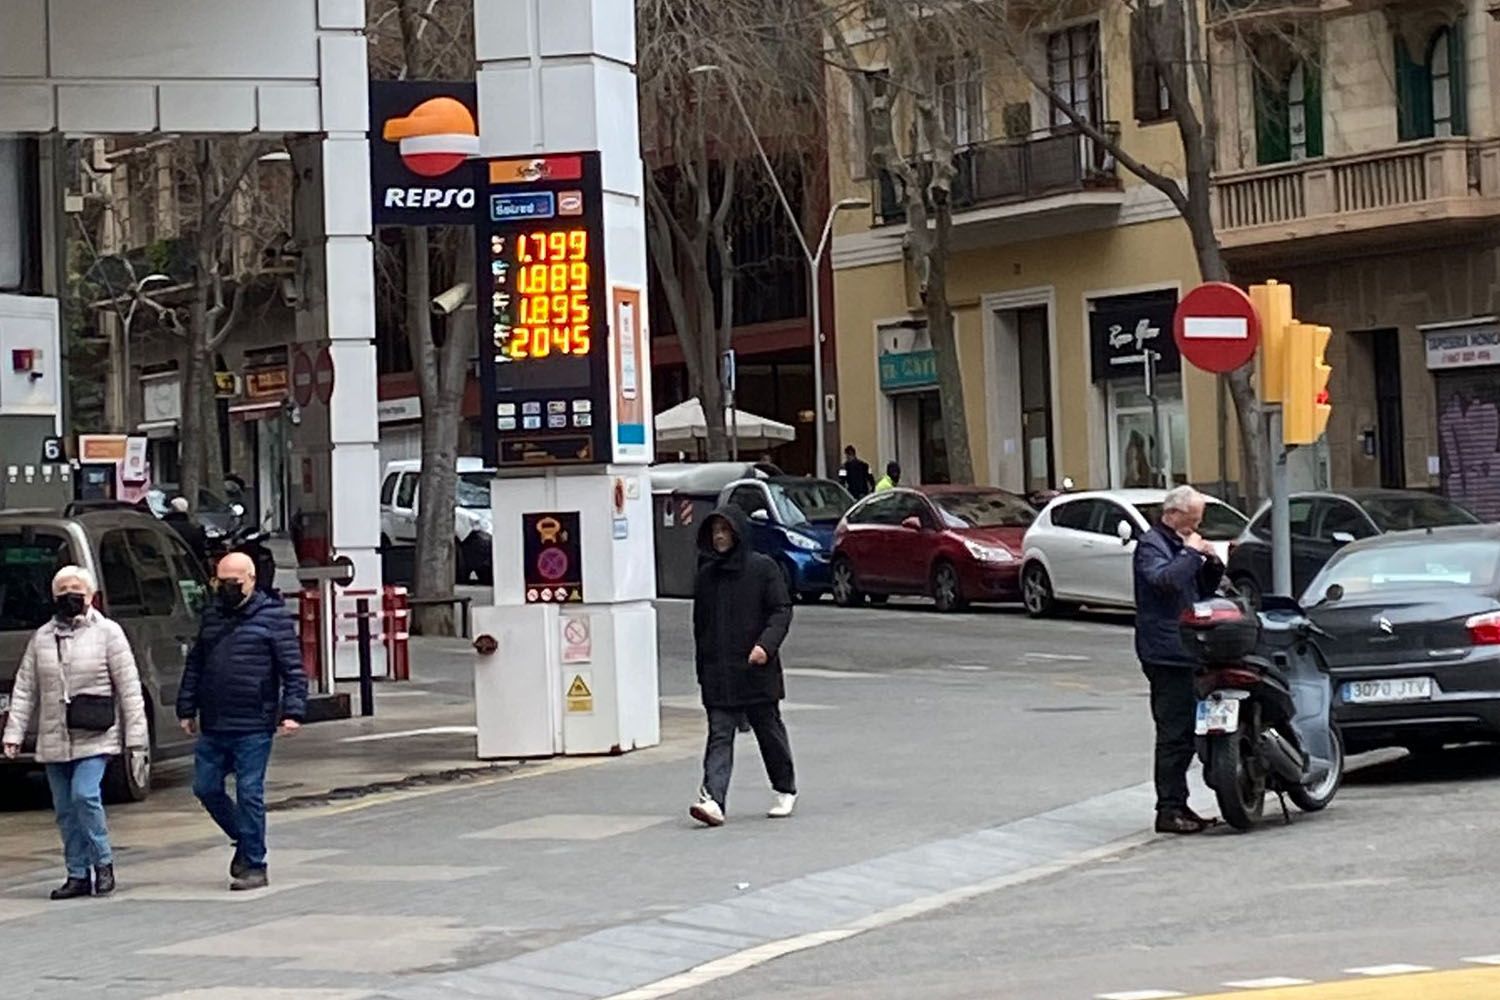 Una gasolinera Repsol del centro de Barcelona con los precios de la gasolina disparados / CG